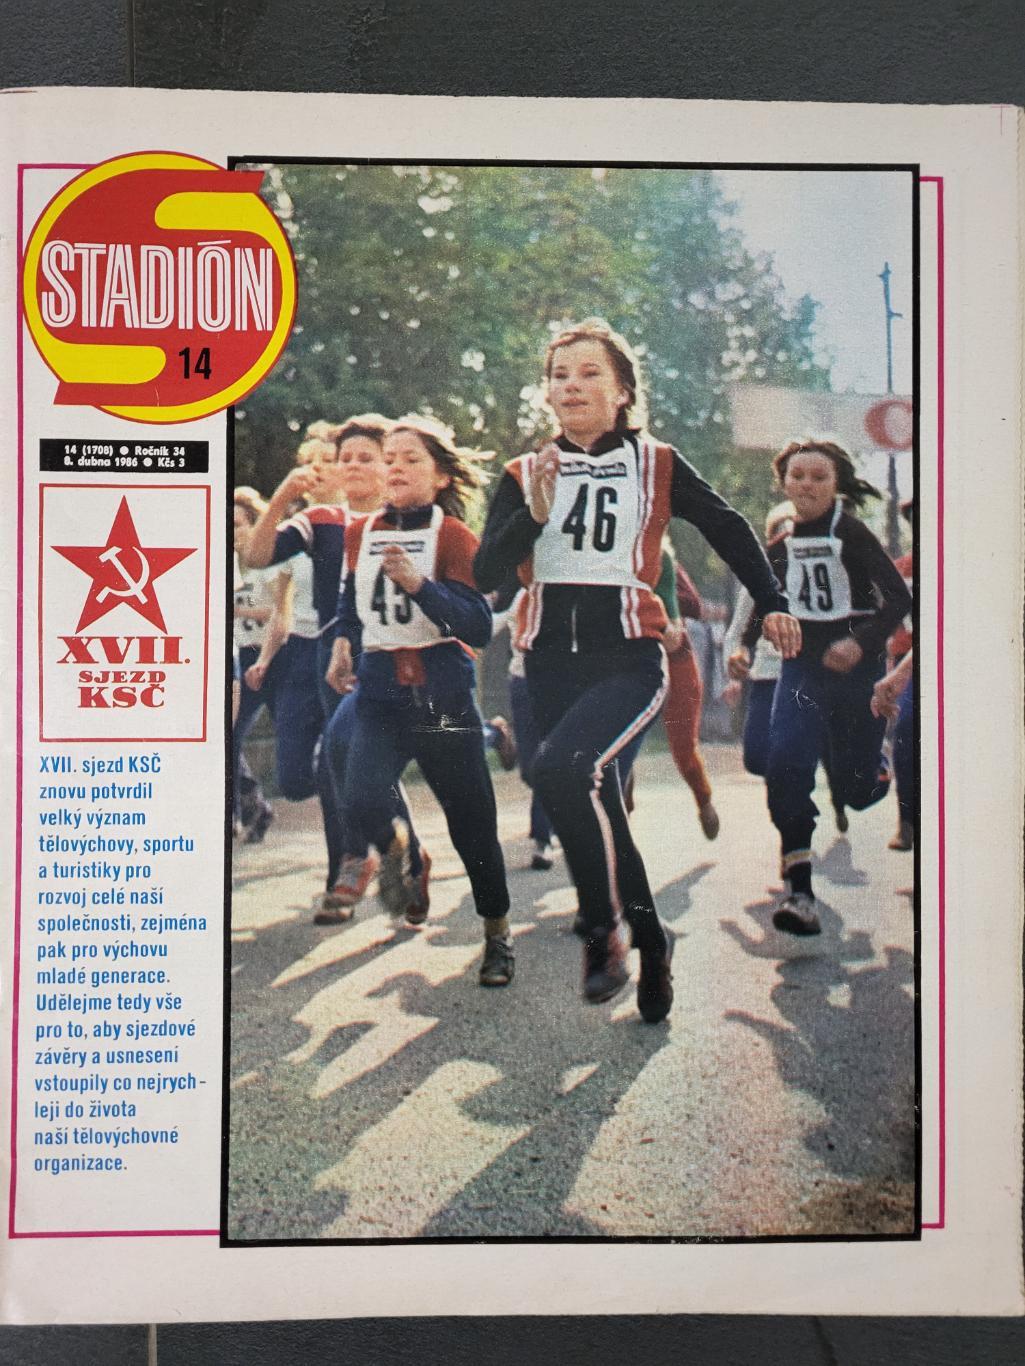 Журнал STADION - Чехословакия 1986г